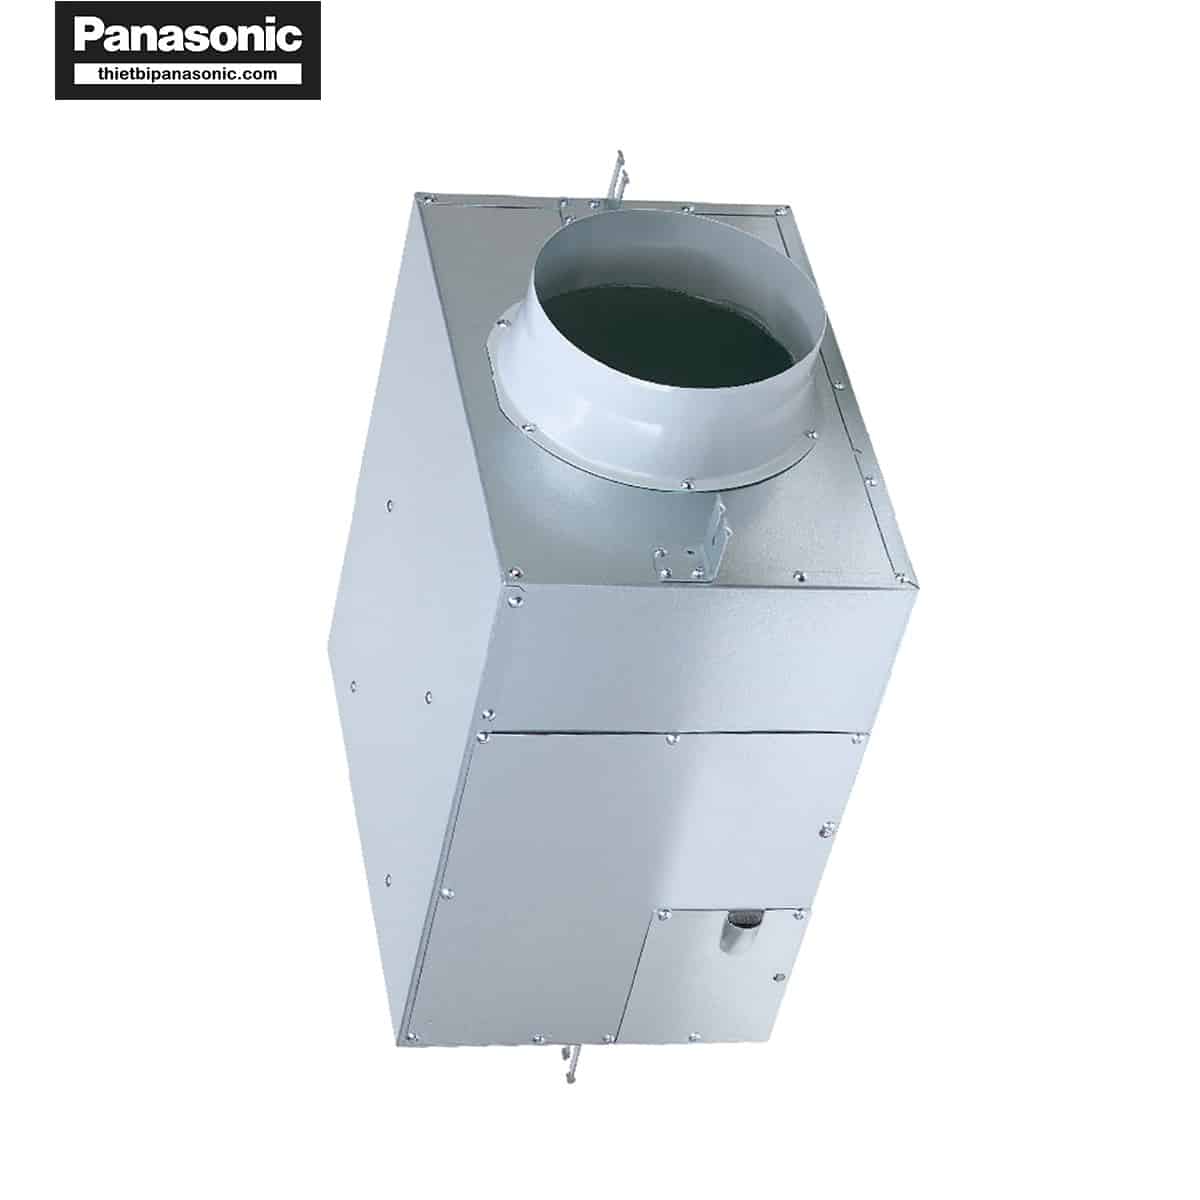 Quạt hút Cabinet Panasonic FV-25NS3 có động cơ DC siêu bền với cả năng tiết kiệm điện hiệu quả